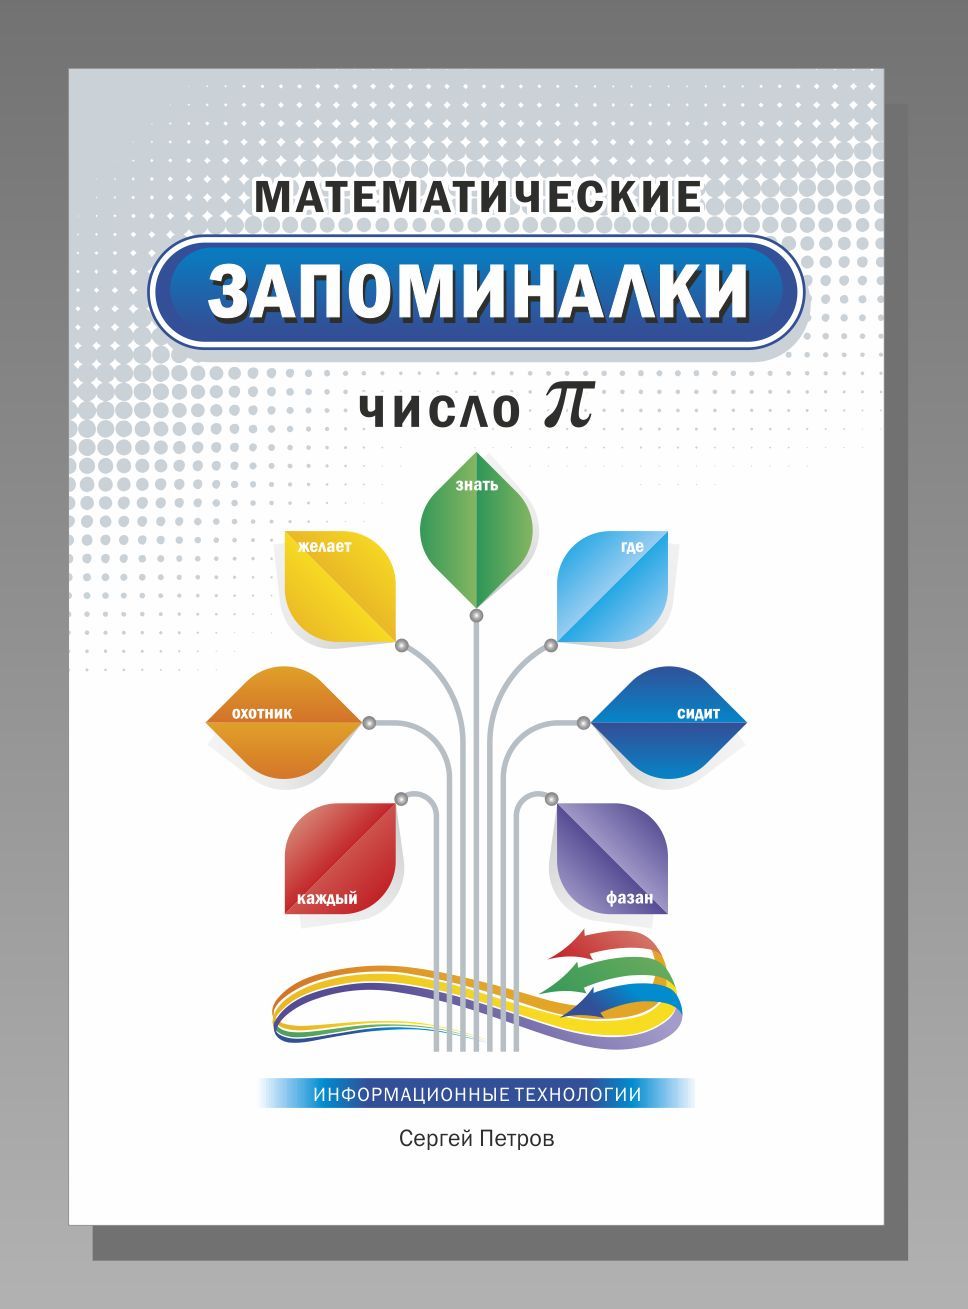 Обложка для электронной книги с запоминалками - дизайнер 28gelms-1lanarb